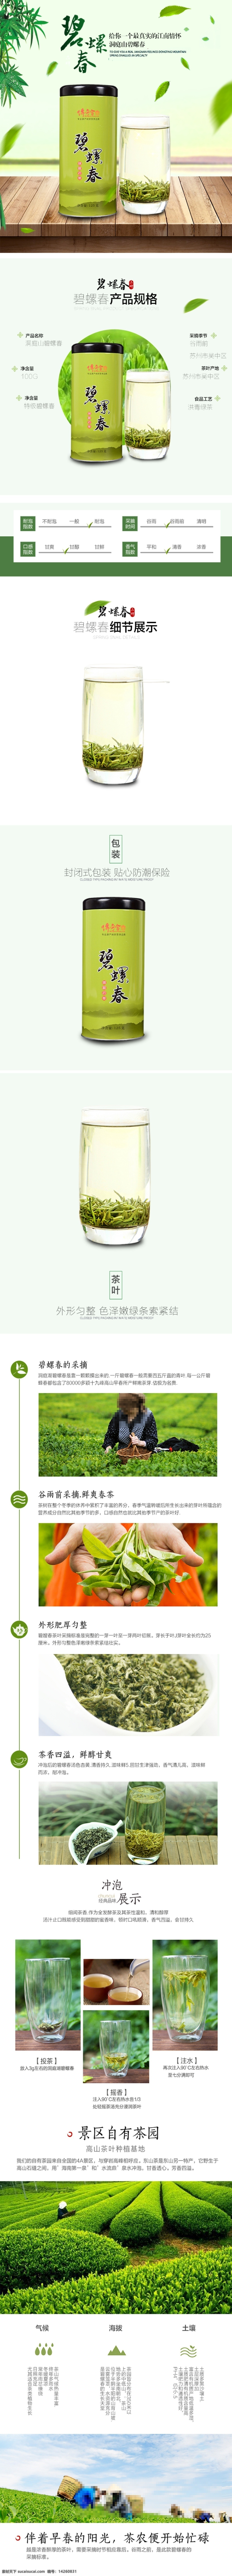 茶叶 茶艺 详情 页 茶 宝贝 描述 模板 红茶 绿茶 毛尖详情 淘宝茶叶 中国 风 淘宝